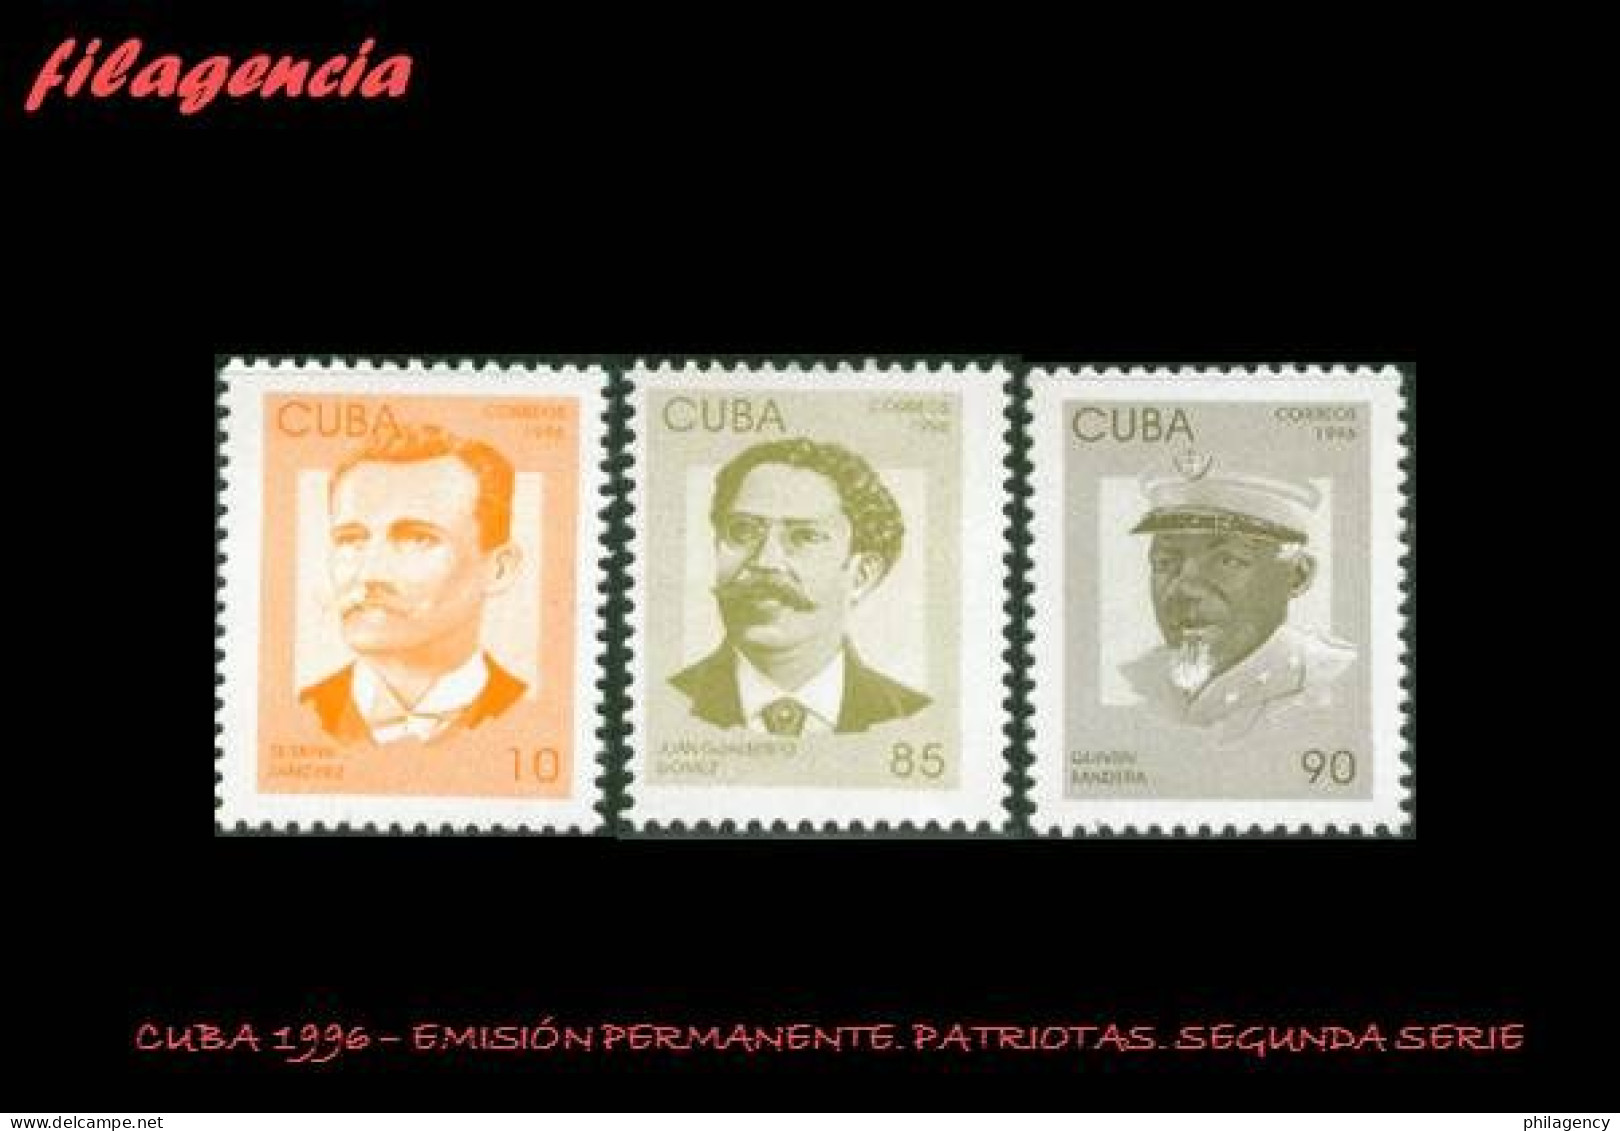 CUBA MINT. 1996-01 EMISIÓN PERMANENTE. PATRIOTAS CUBANOS. SEGUNDA SERIE - Nuevos